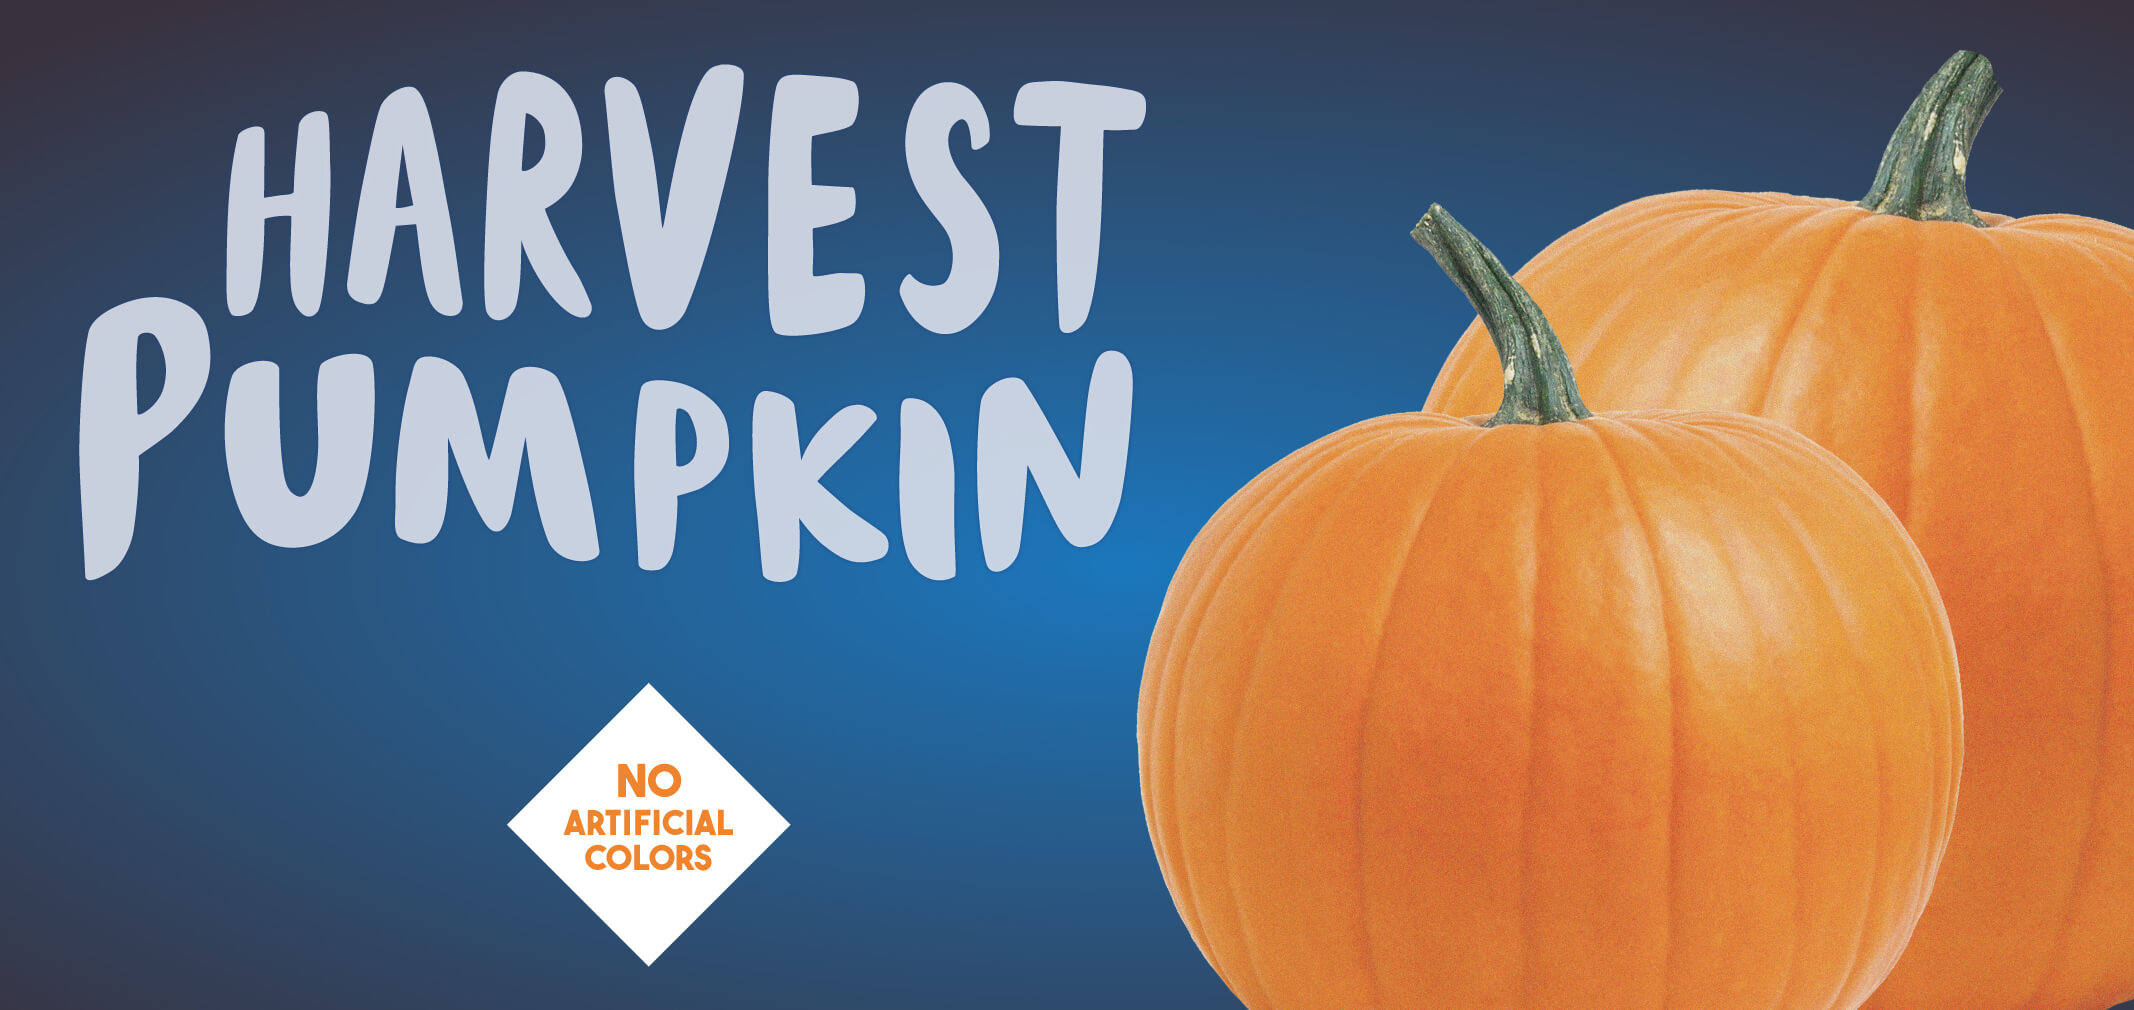 harvest pumpkin label image